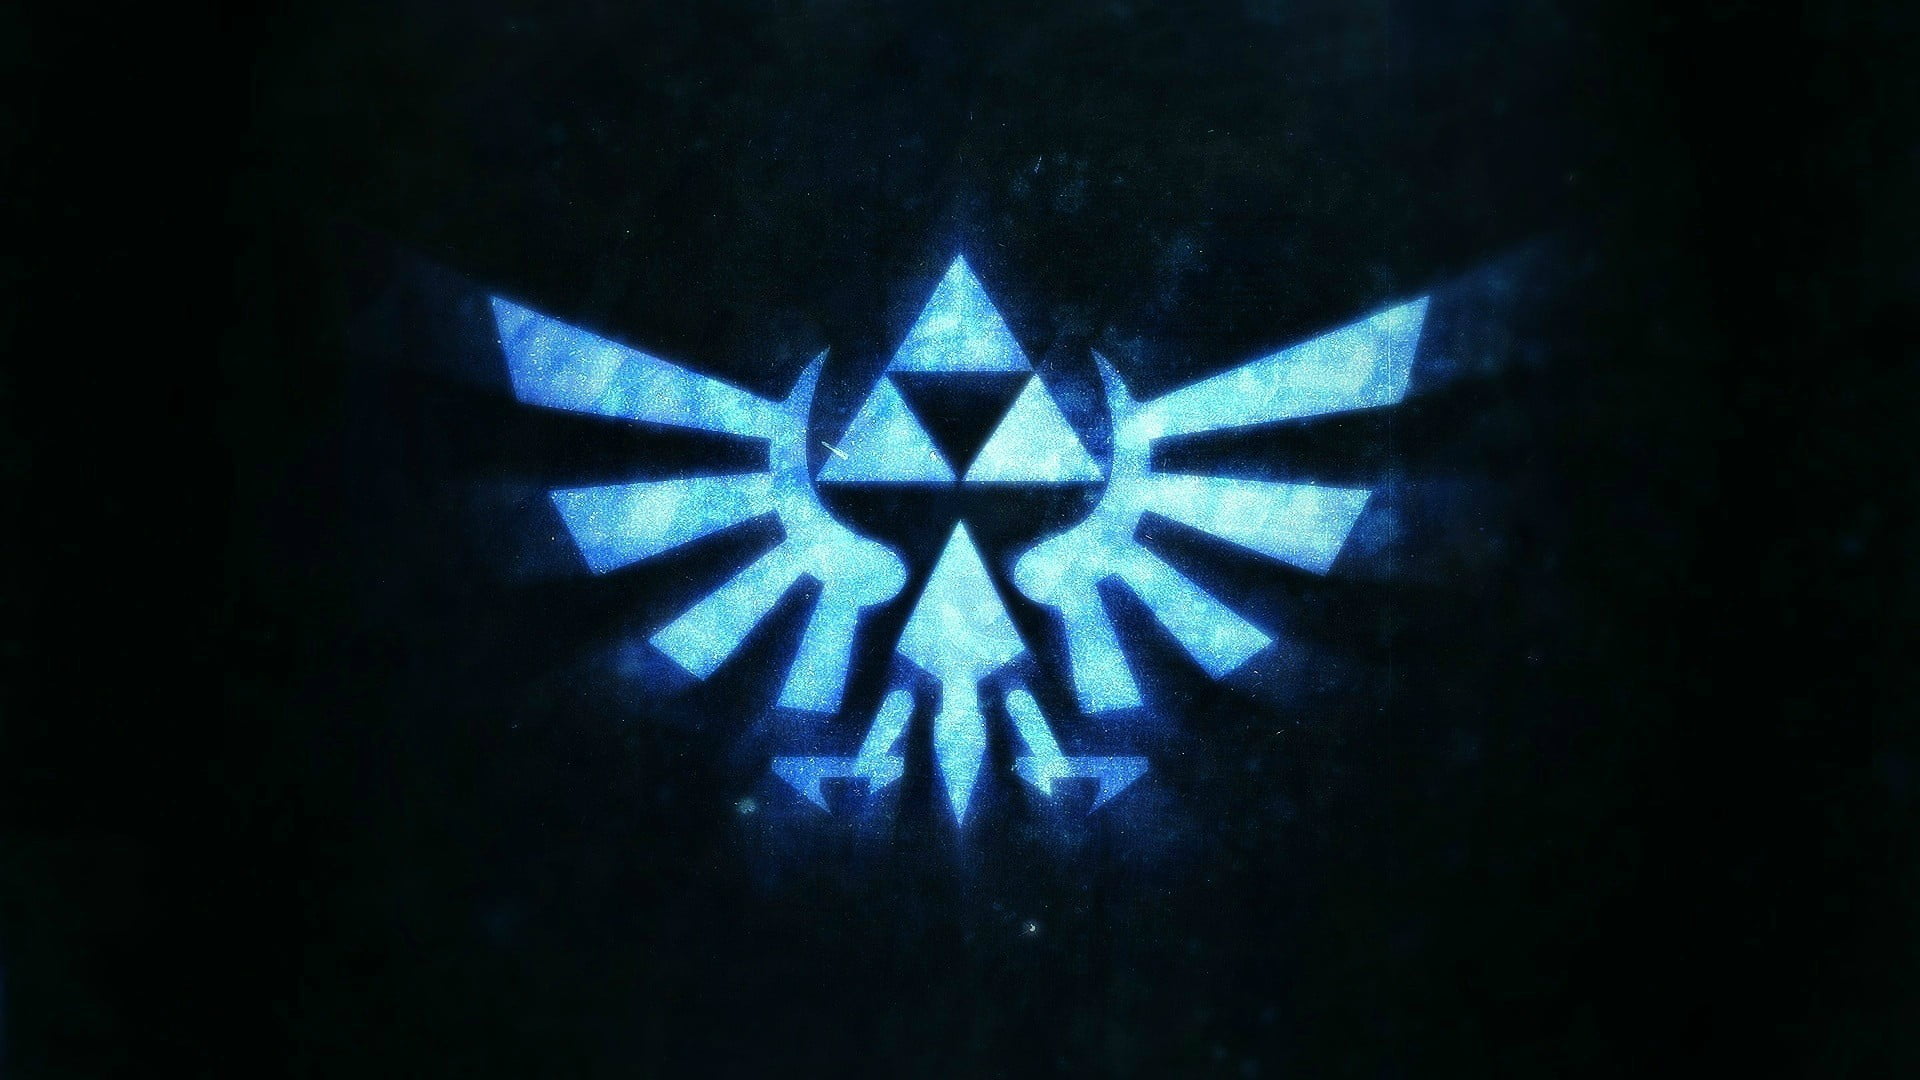 Legend Of Zelda Triforce Emblem The Legend Of Zelda Video Games Images, Photos, Reviews